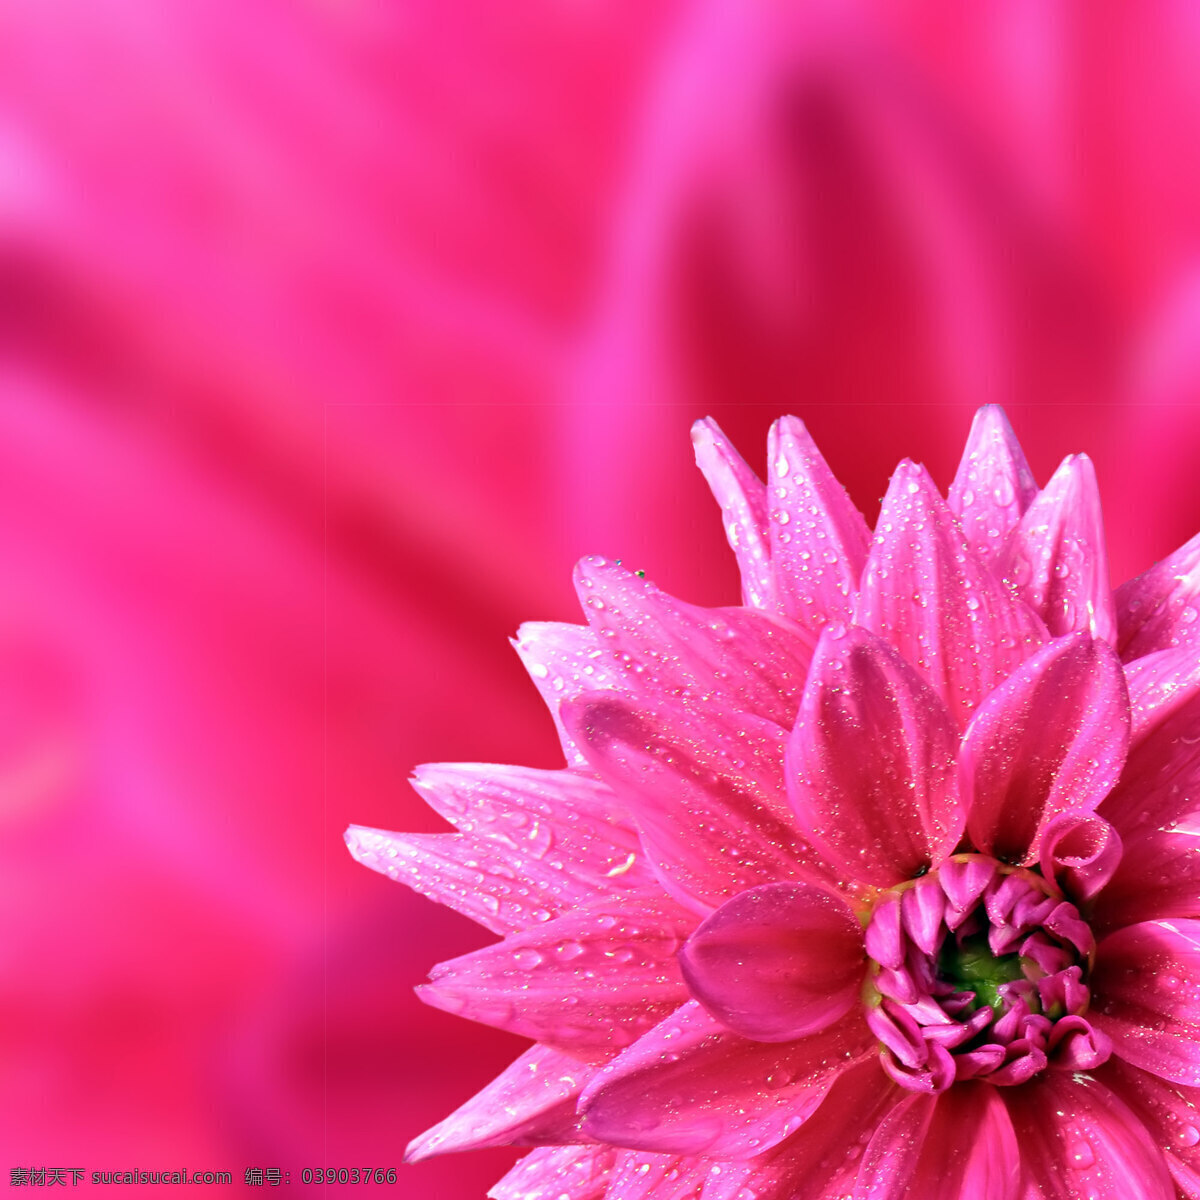 红色 鲜花 上 露珠 娇艳的花朵 水珠 露水 美丽鲜花 漂亮花朵 花卉 花草树木 生物世界